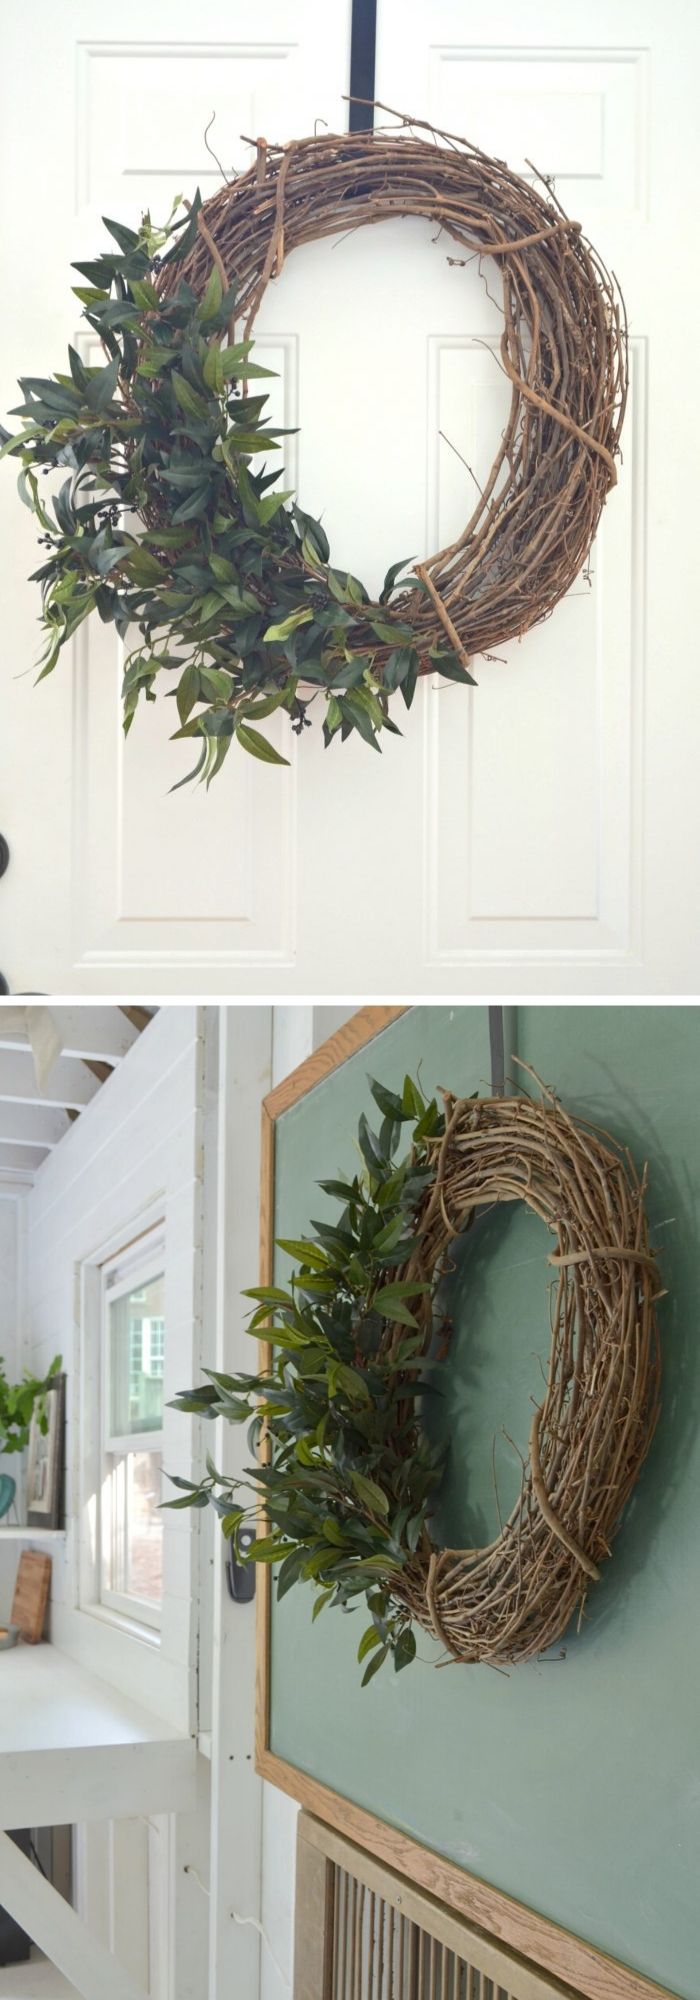 15 farmhouse wreath ideas